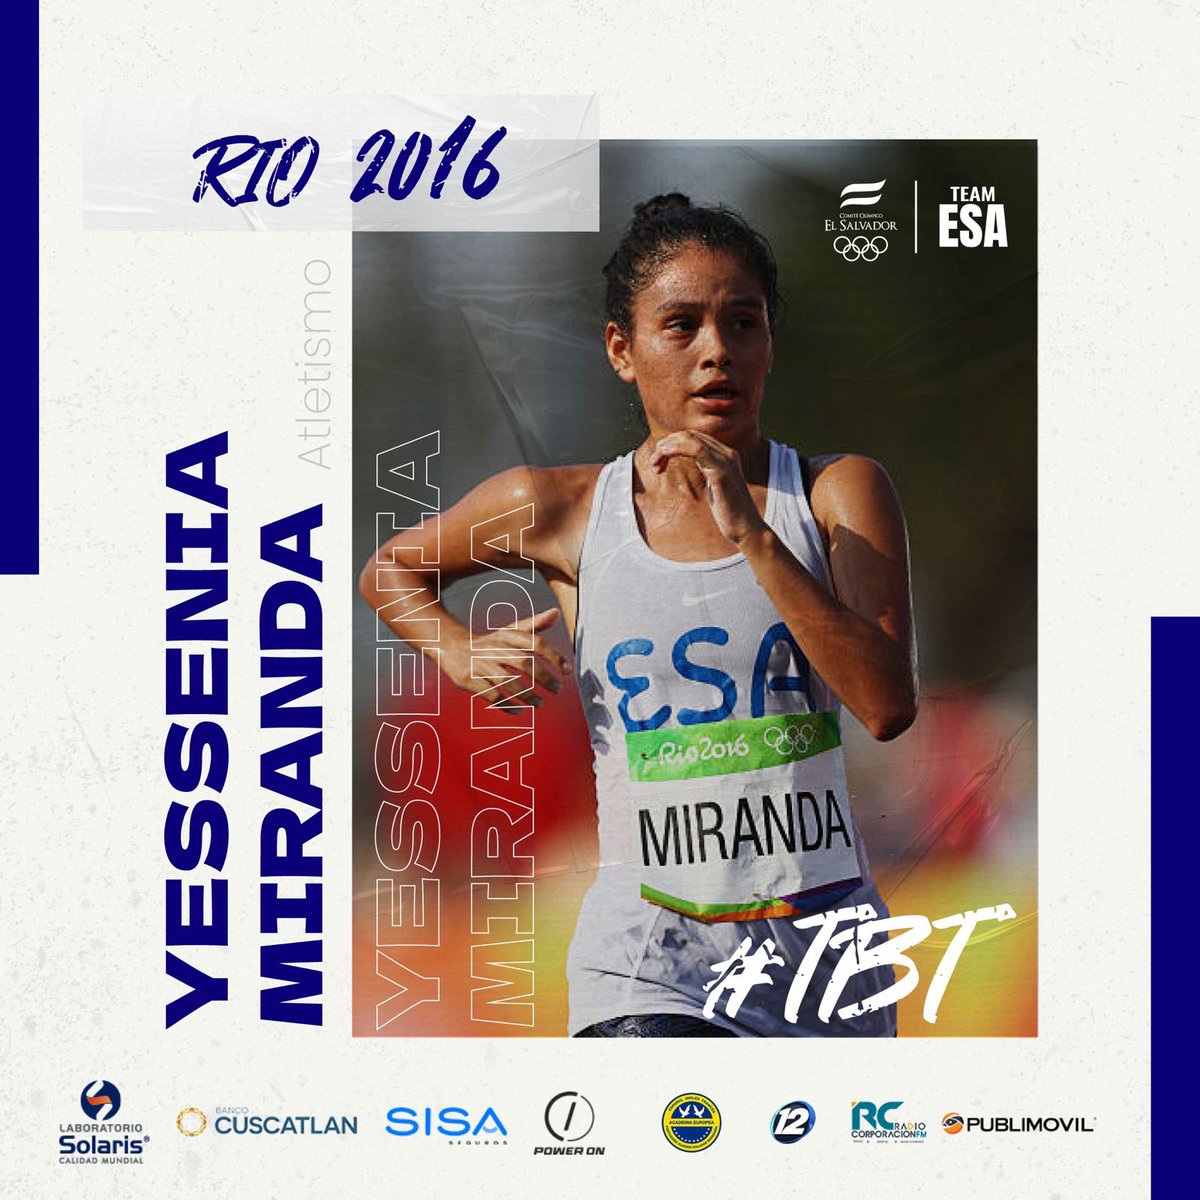 #TBT 🏃‍♀️ Recordamos la participación de nuestra atleta Yessenia Miranda en los 20 kilómetros marcha en los Juegos Olímpicos Río 2016 🇧🇷. #TeamESA 🇸🇻